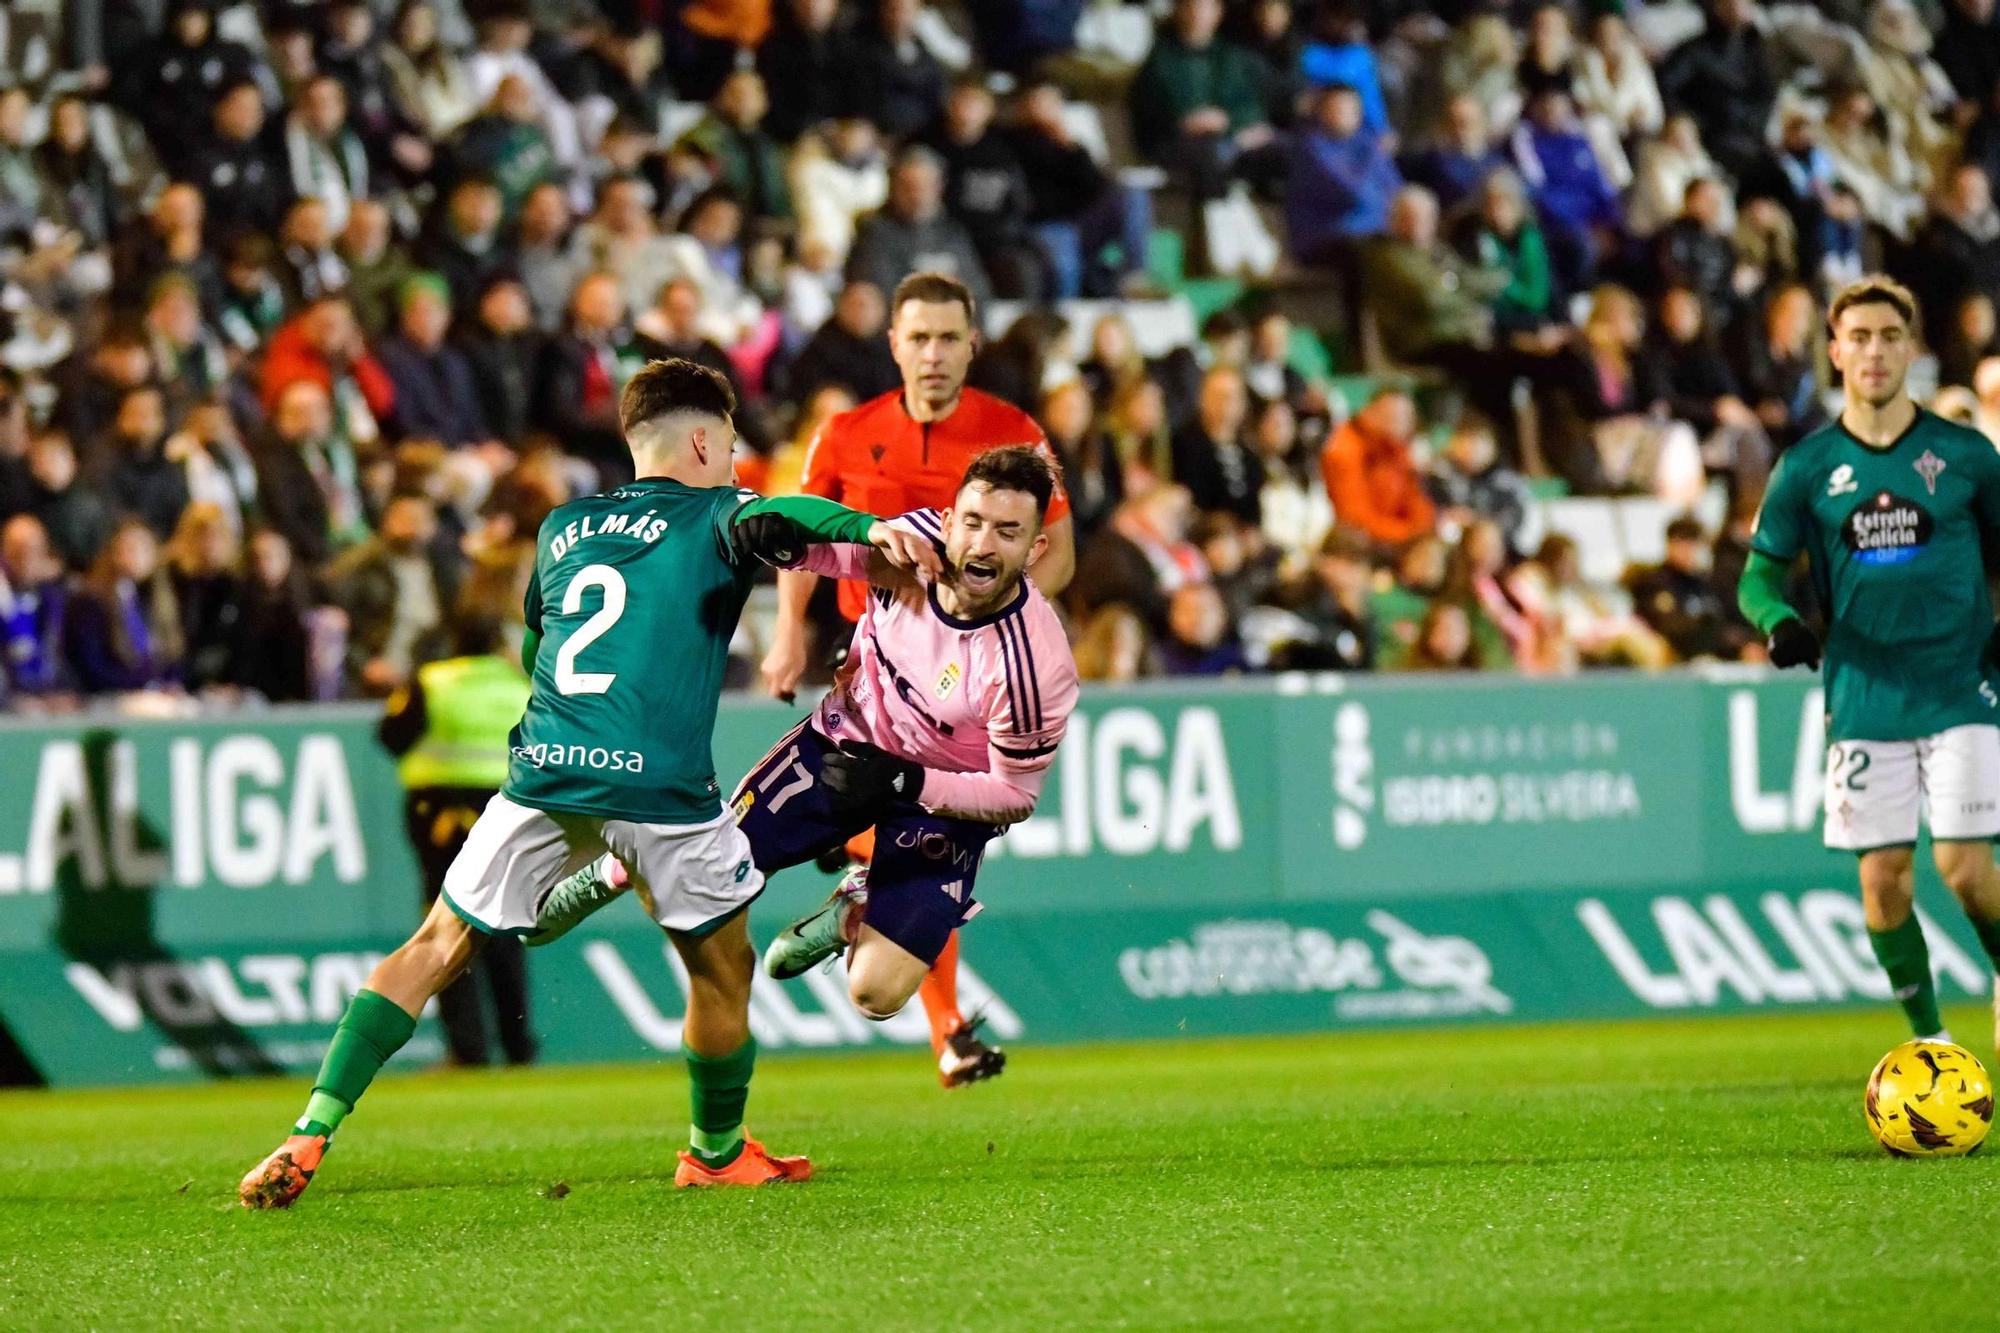 EN IMÁGENES: El Racing de Ferrol - Real Oviedo, con gran presencia de afición oviedista